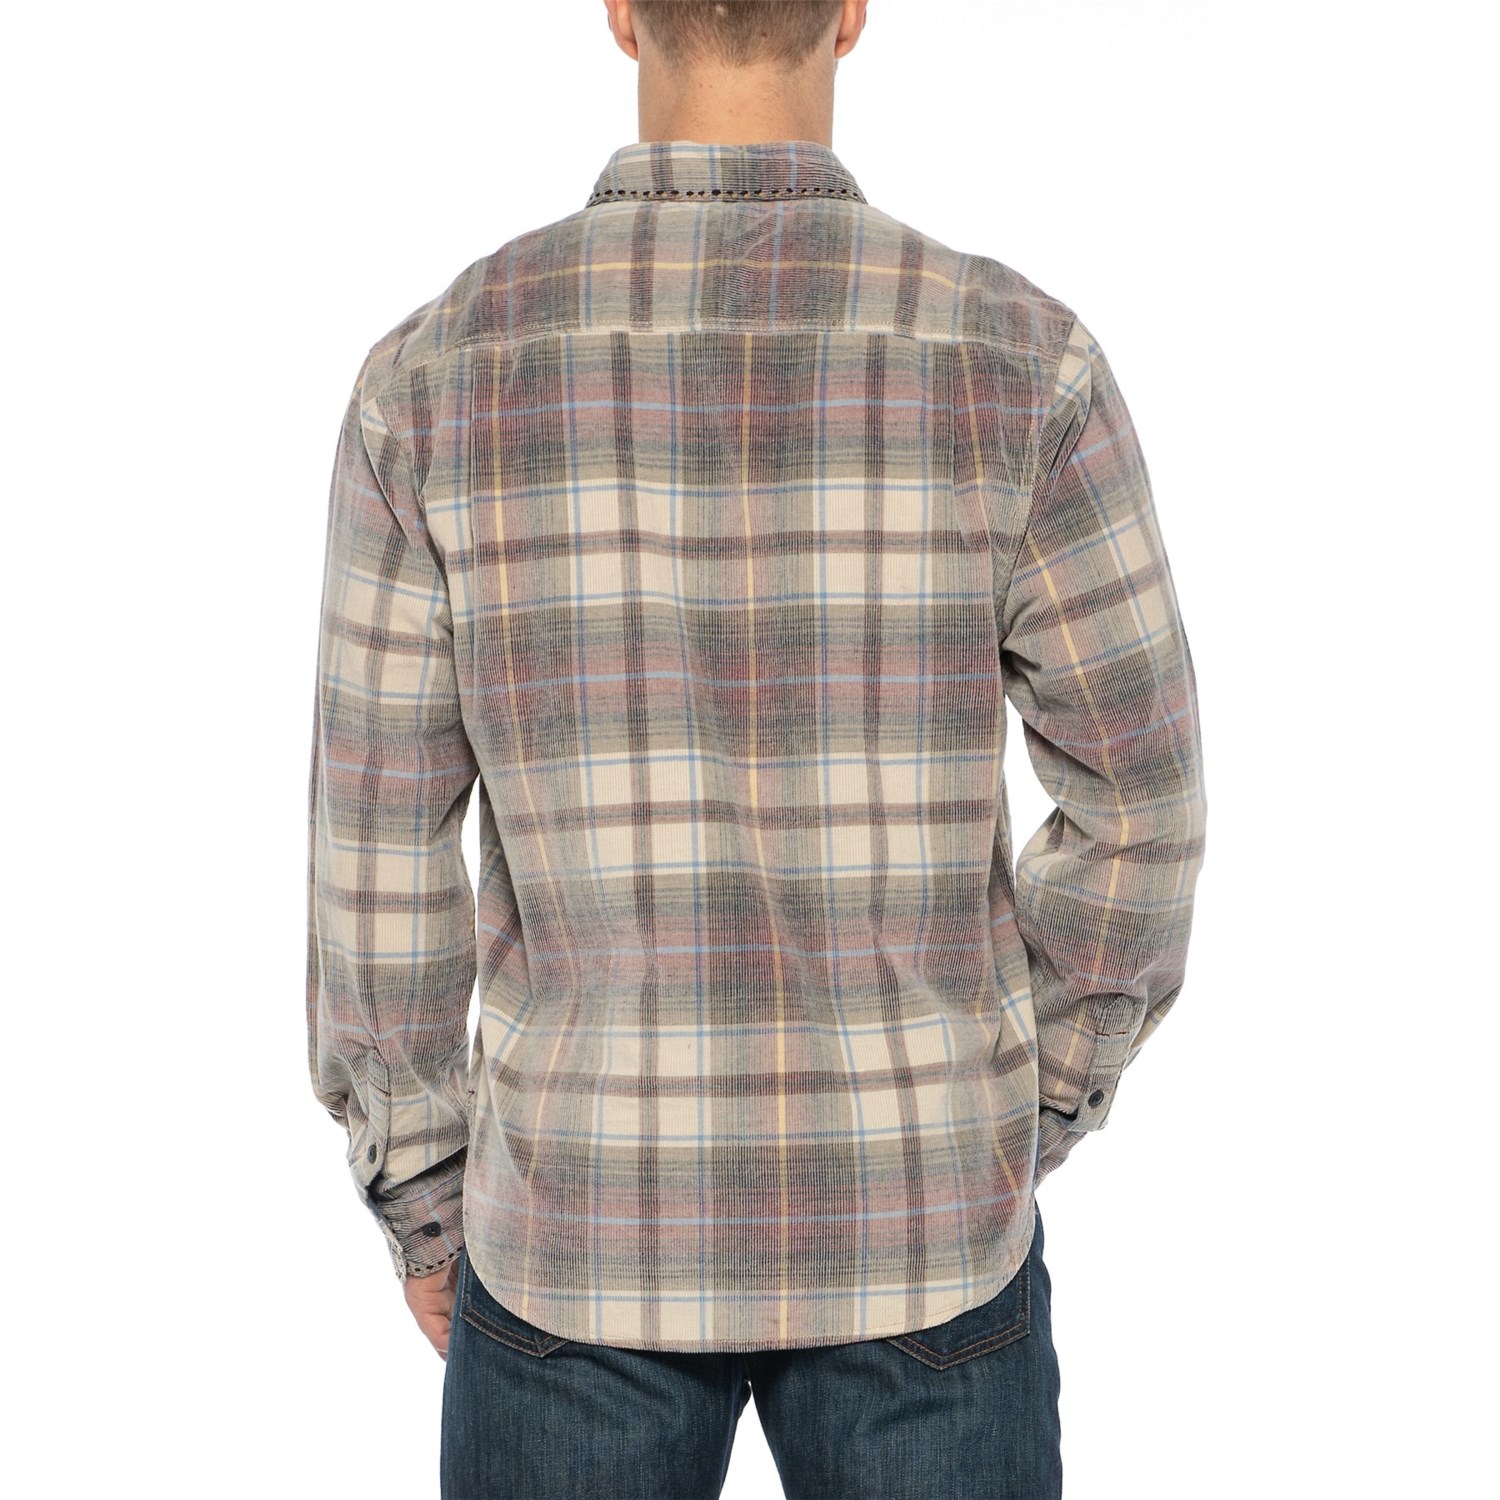 True Grit Wayfair Vintage Plaid Corduroy Shirt (For Men) - Save 62%